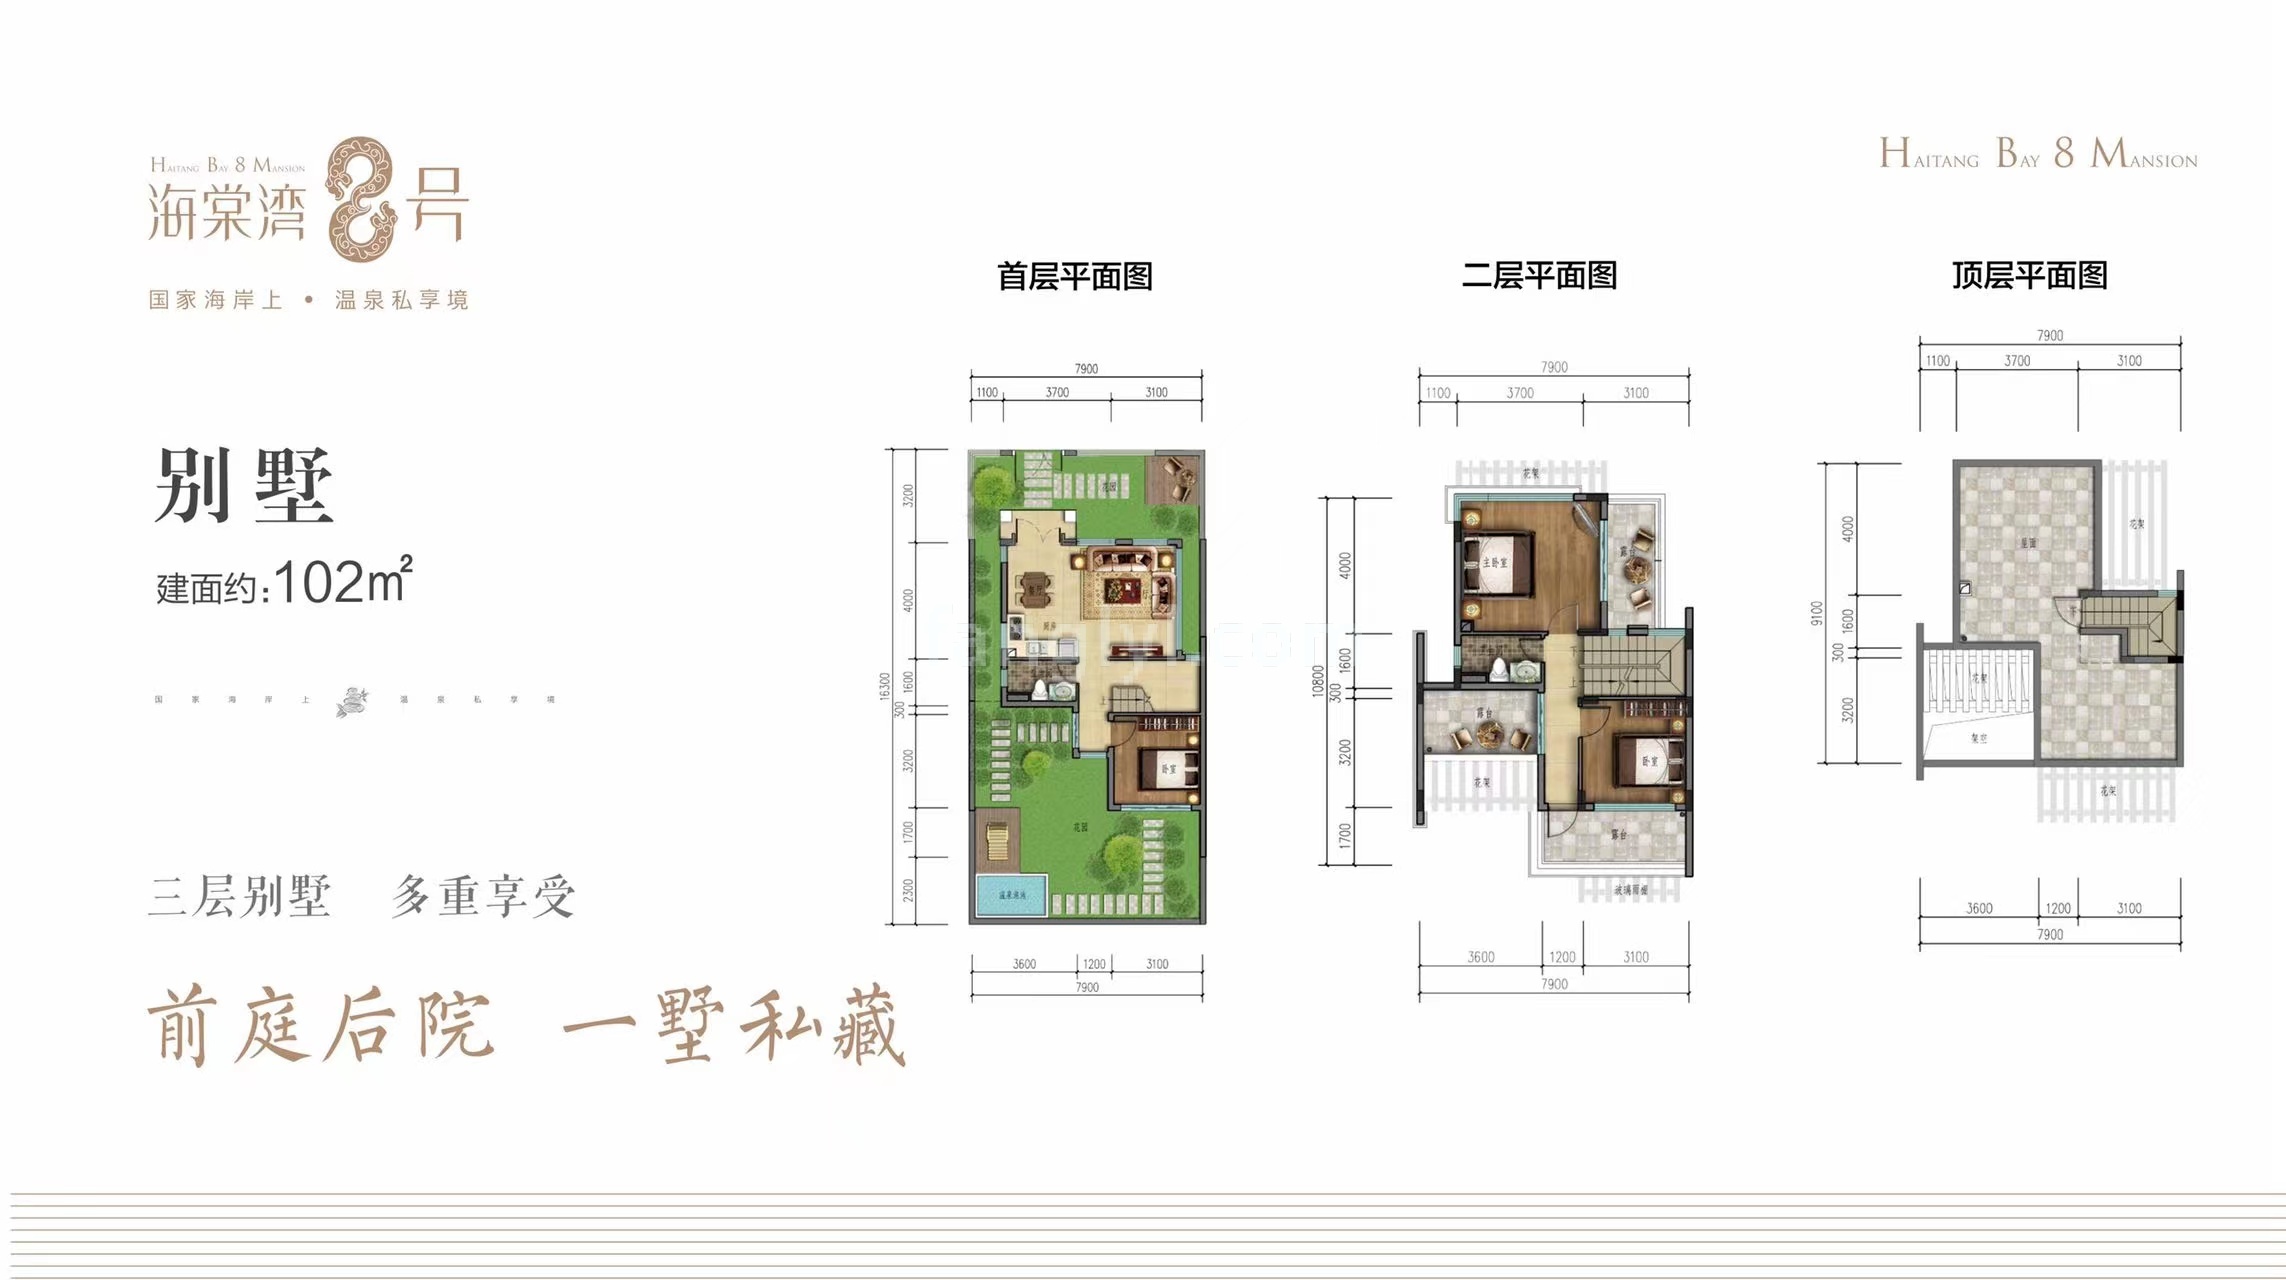 联排 A户型 建筑面积103㎡ 可使用面积260㎡ 3房2厅3卫